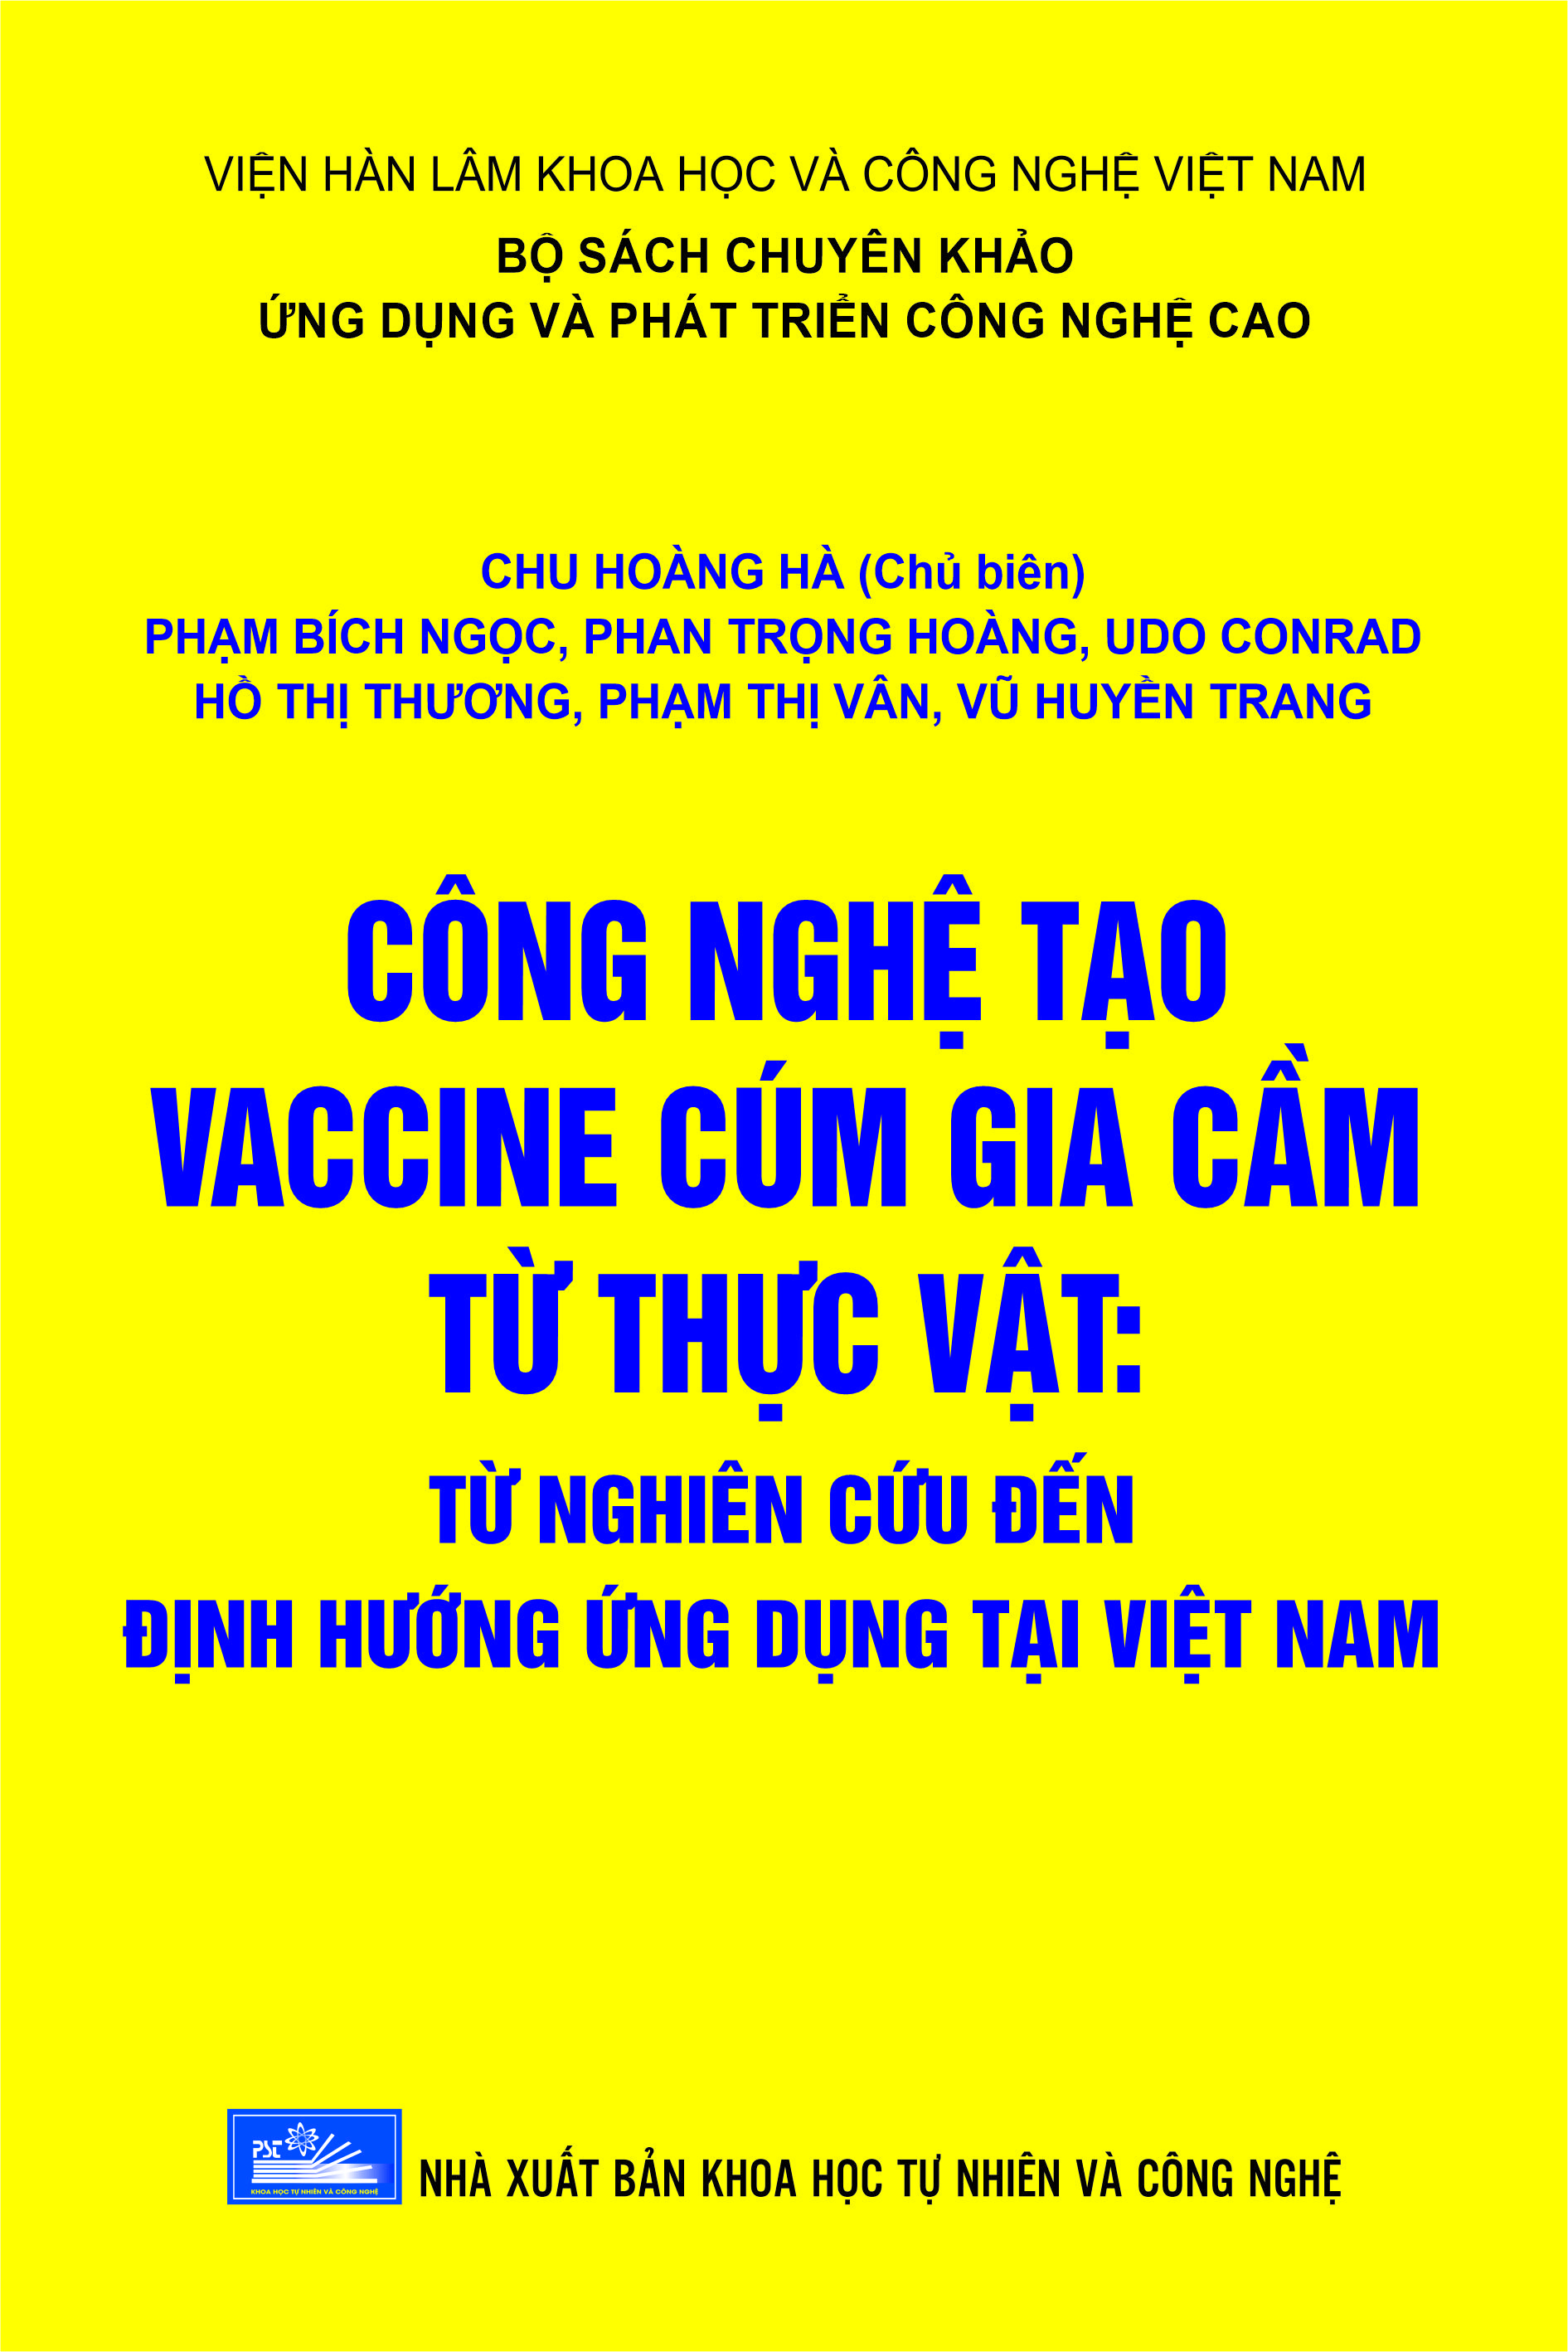 Công nghệ tạo vaccine cúm gia cầm từ thực vật. Từ nghiên cứu đến định hướng ứng dụng tai Việt Nam